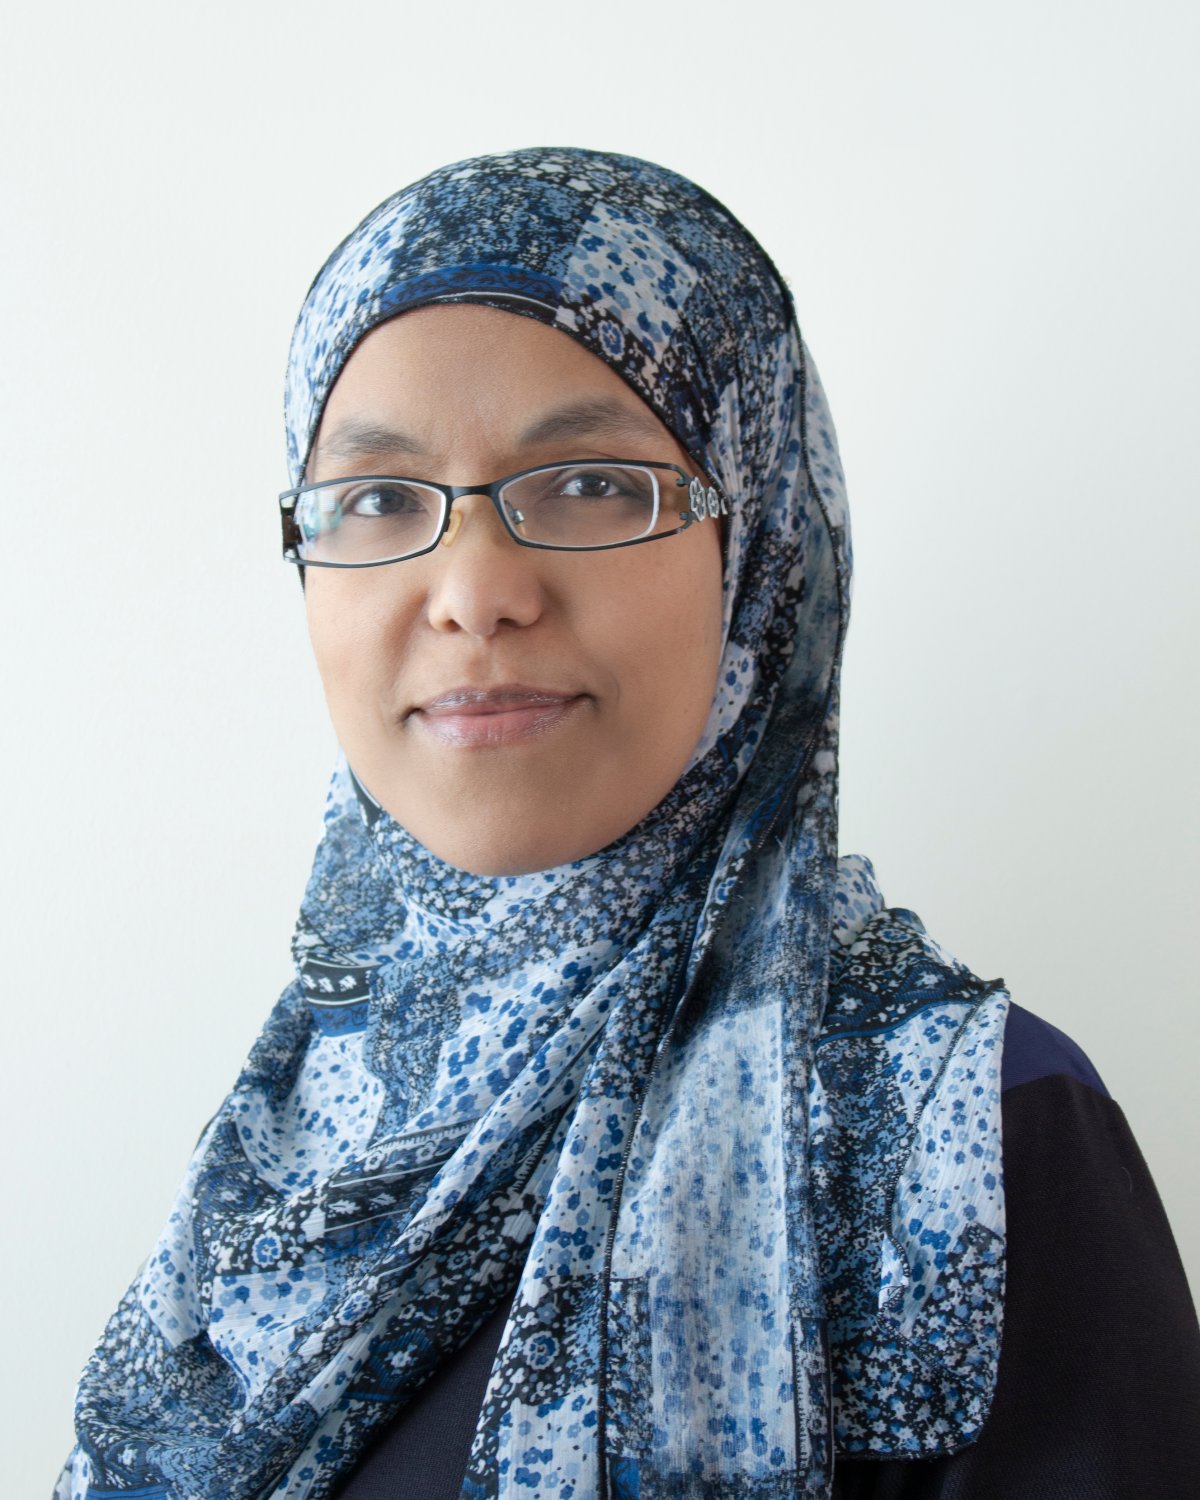 Tina Aseffa says converting to Islam felt ‘natural.’